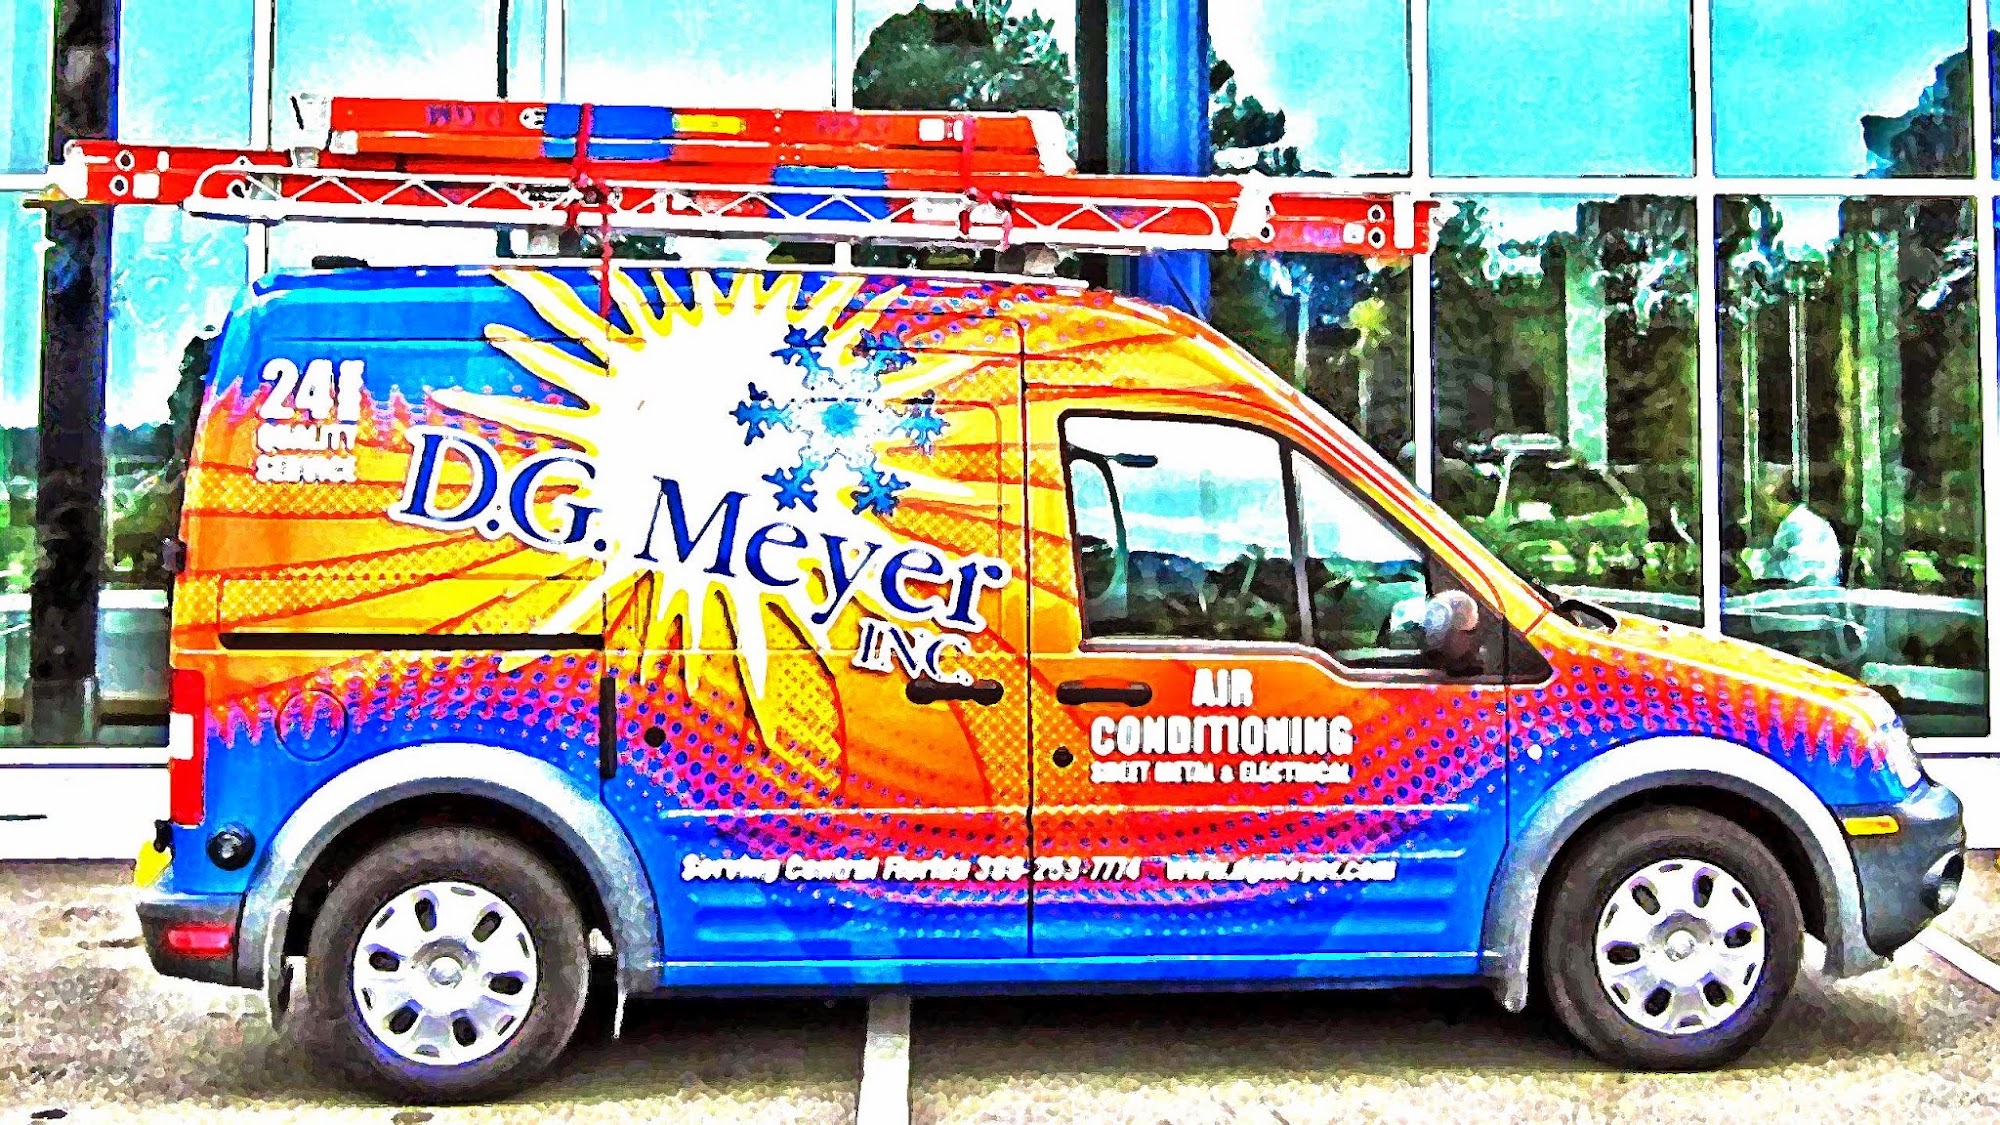 D. G. Meyer, Inc.